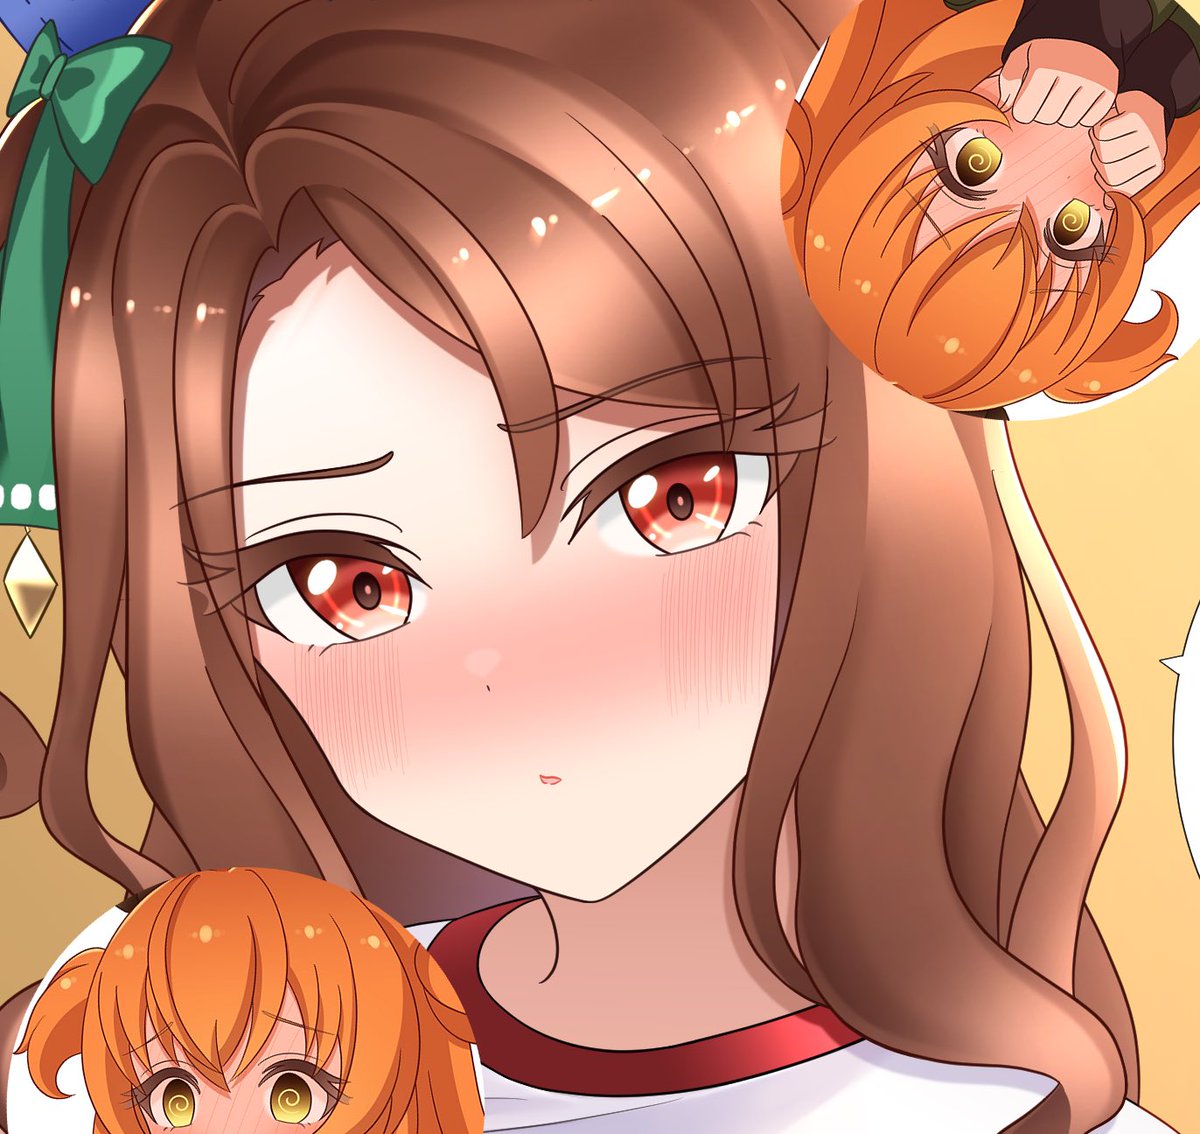 mayano top gun (umamusume) multiple girls animal ears horse ears orange hair blush 2girls brown hair  illustration images